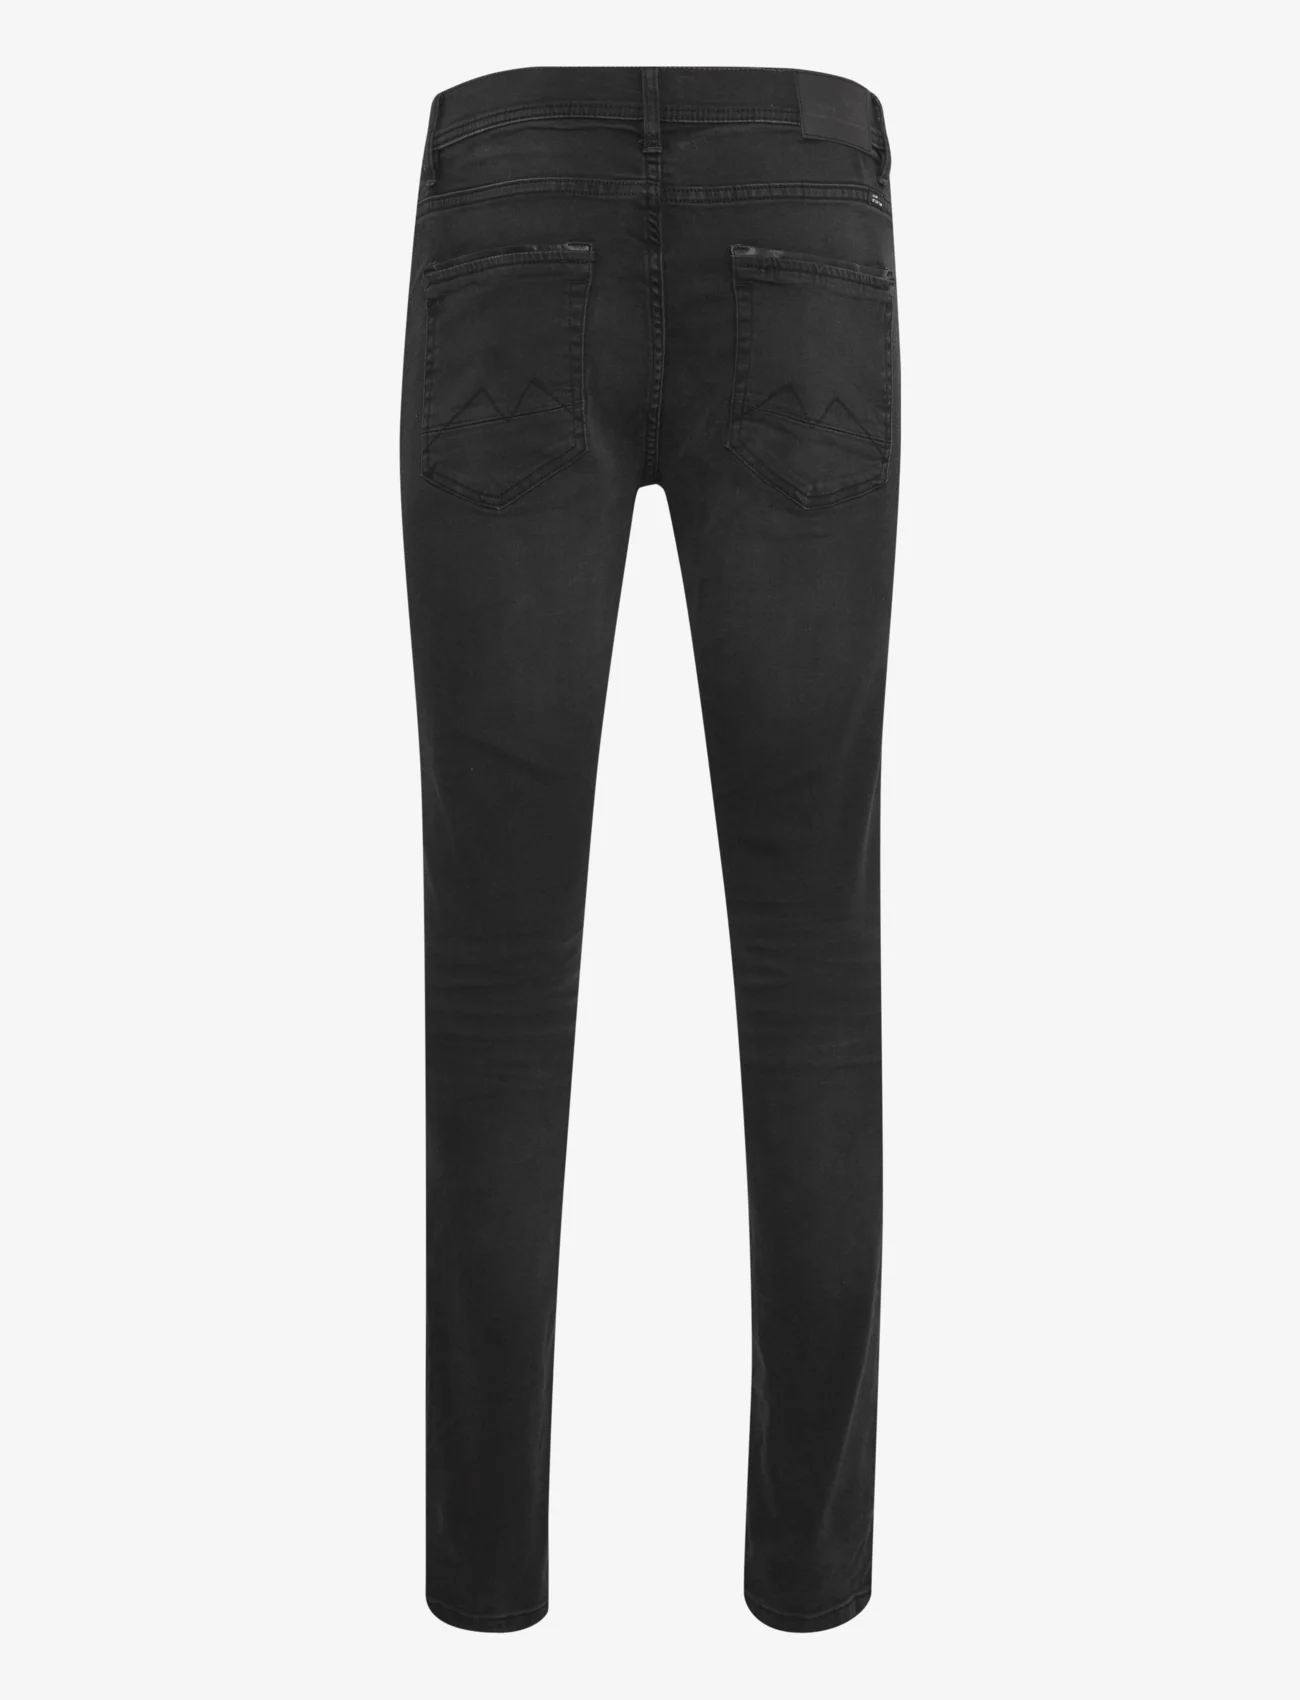 Blend - Jet fit - NOOS - slim jeans - denim black - 1